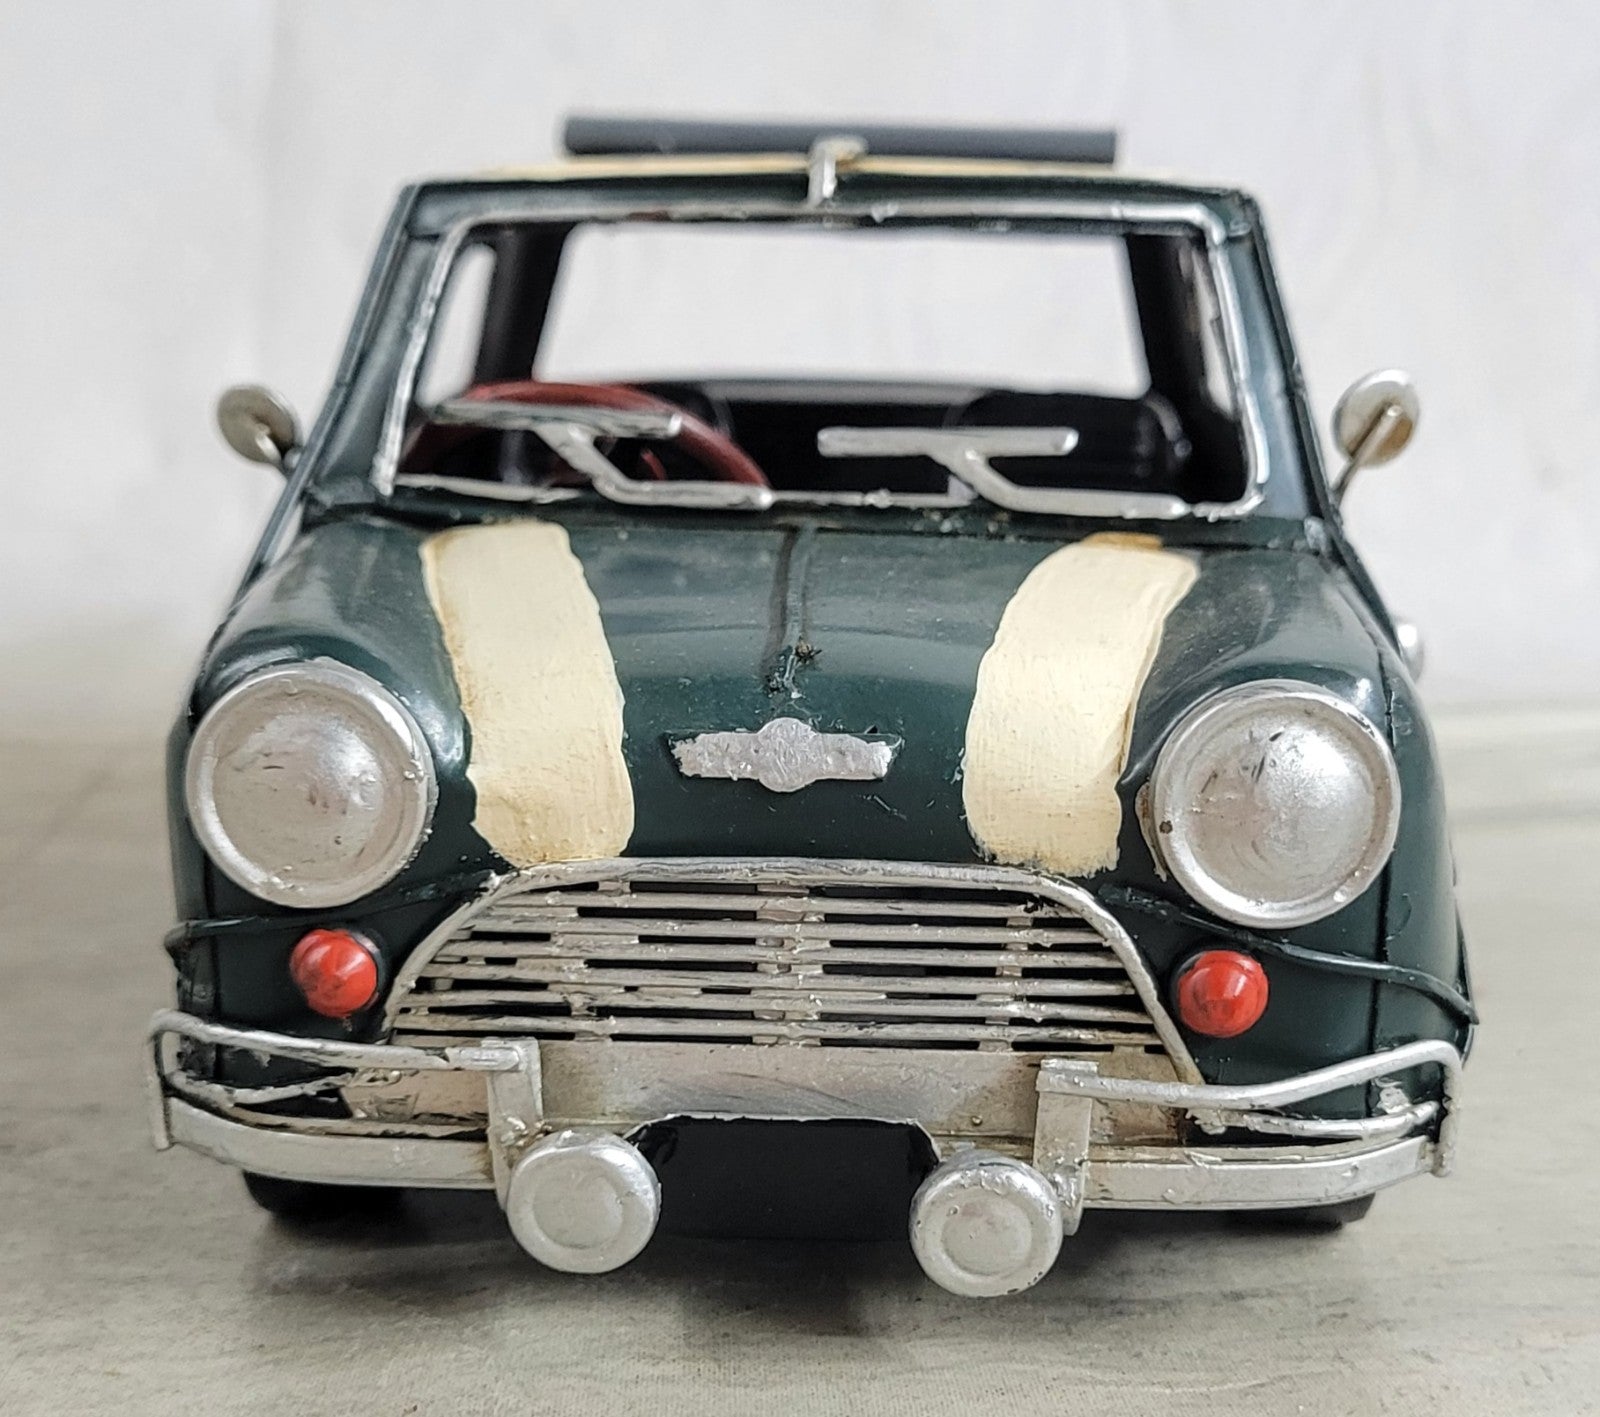 Mini Cooper vintage slot car 1:32 Made in United Kingdom Vintage Toy Art